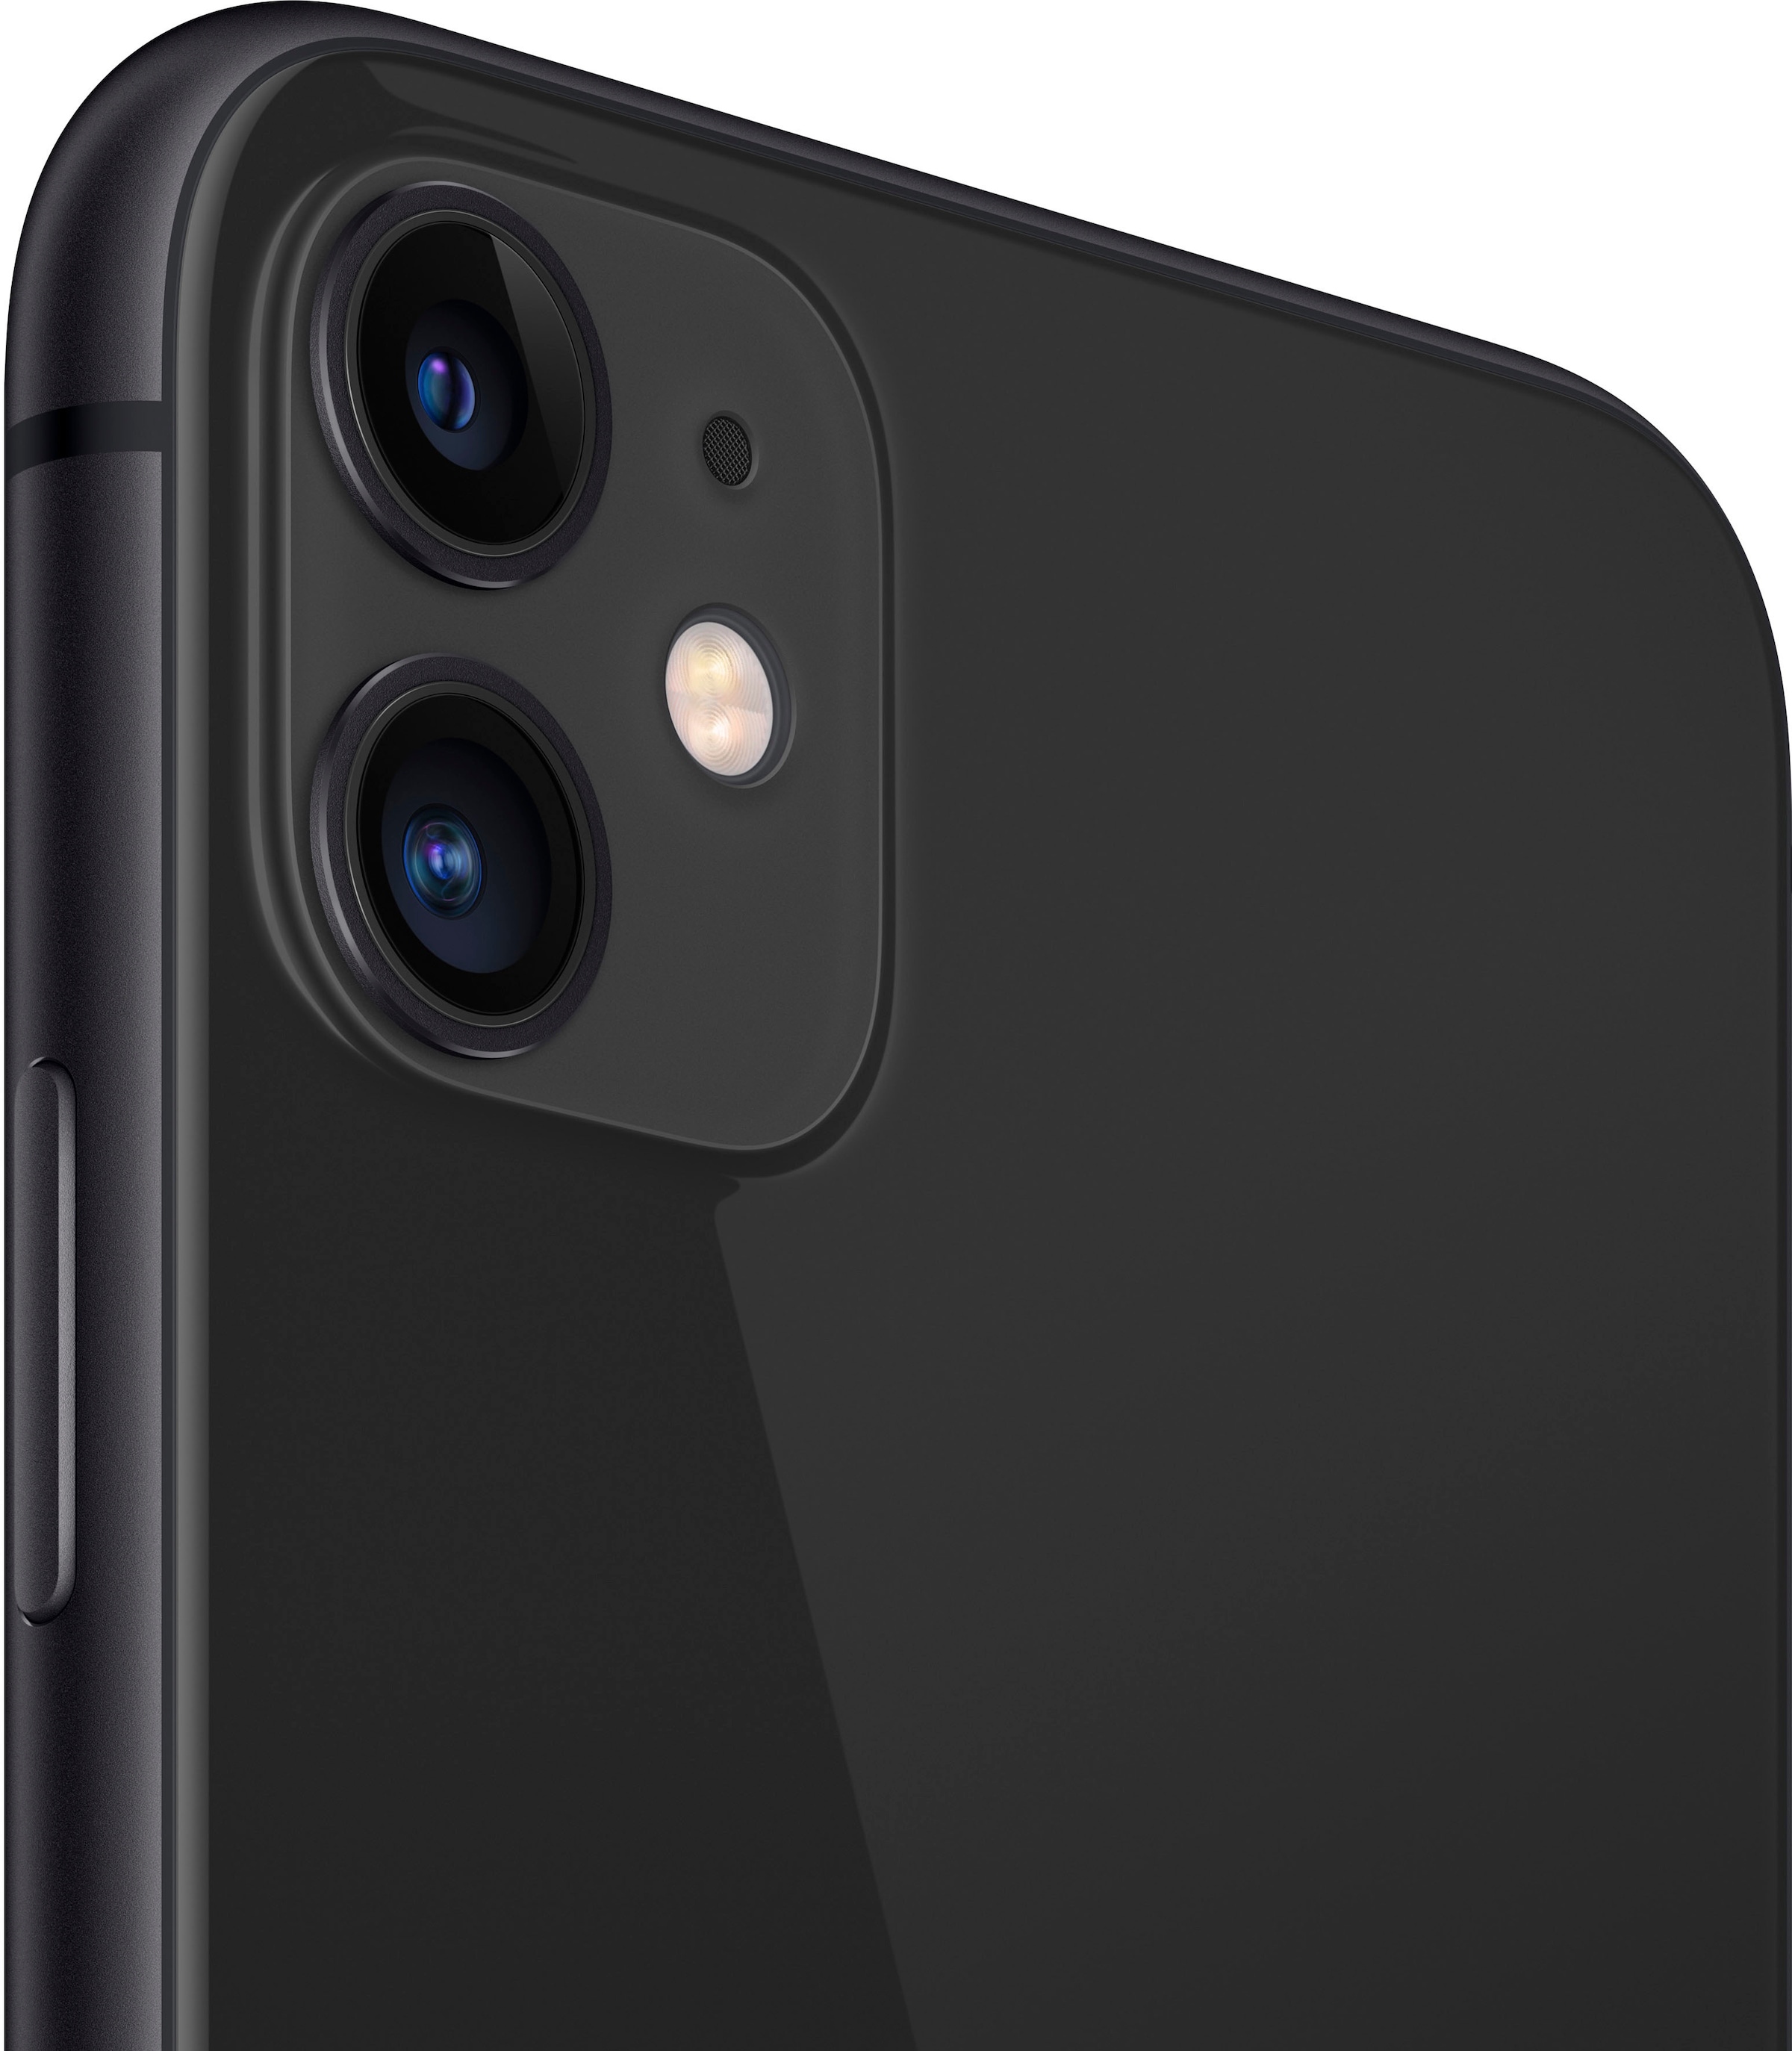 Apple Smartphone »iPhone 11«, black, 15,5 cm/6,1 Zoll, 64 GB Speicherplatz, 12 MP Kamera, ohne Strom-Adapter und Kopfhörer